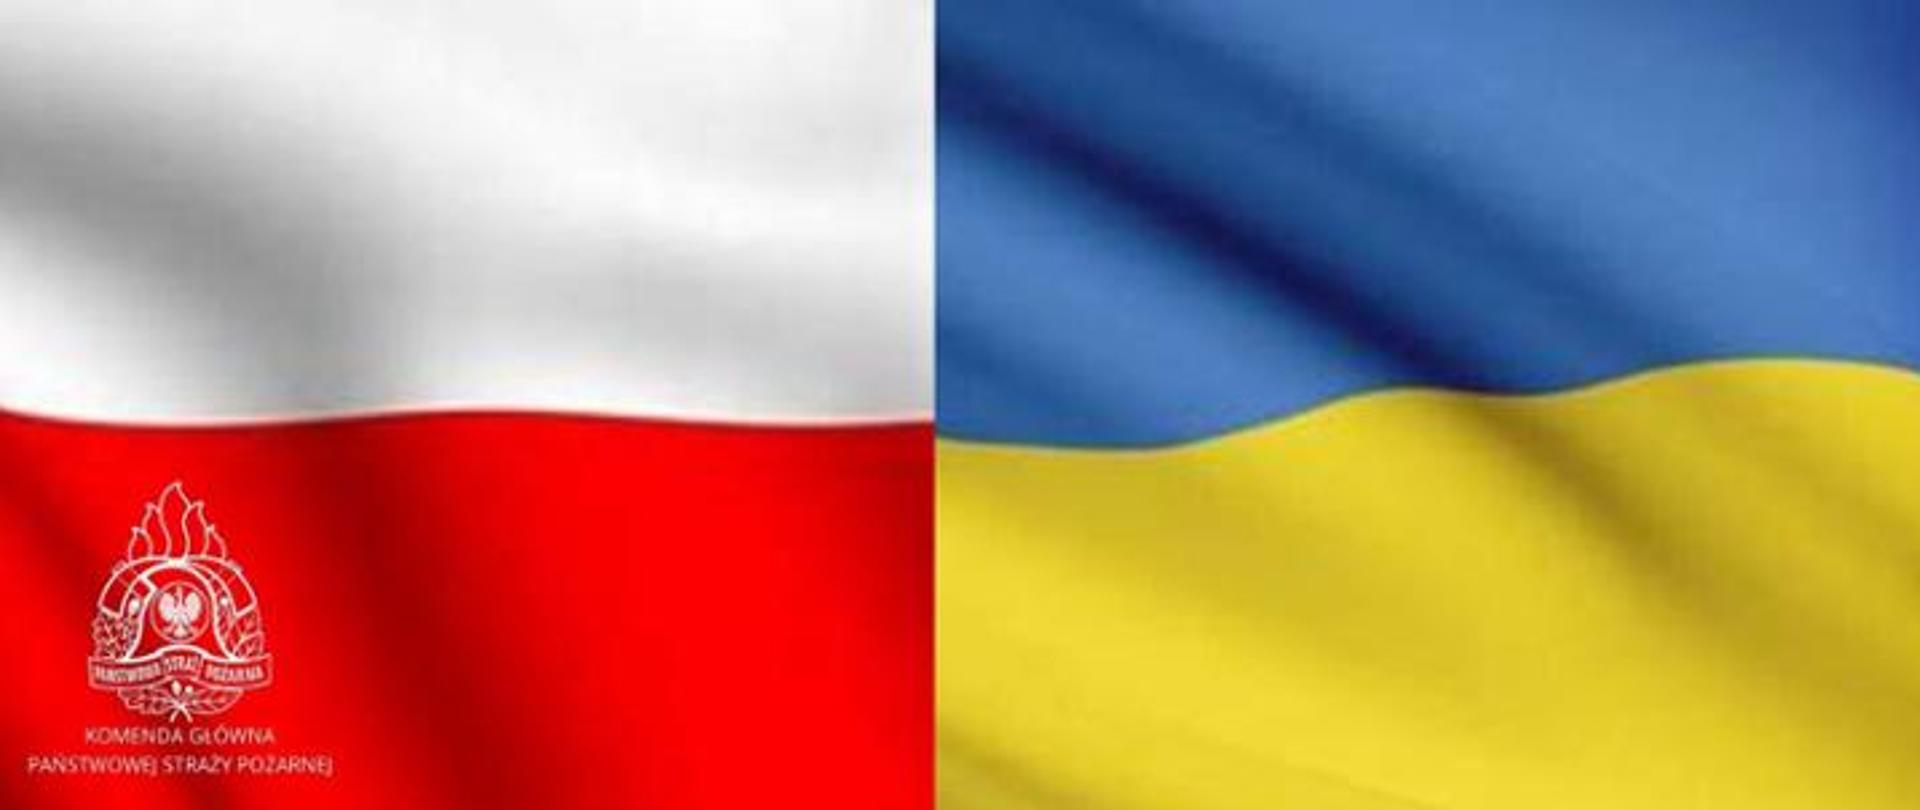 Zdjęcie przedstawia dwie flagi: Polski i Ukrainy. Flaga Polski jest po lewej stronie zdjęcia i w jej dolnym lewym rogu znajduje się logo PSP i napis Komenda Główna Państwowej Straży Pożarnej. Flaga Ukrainy znajduje się po prawej stronie zdjęcia.